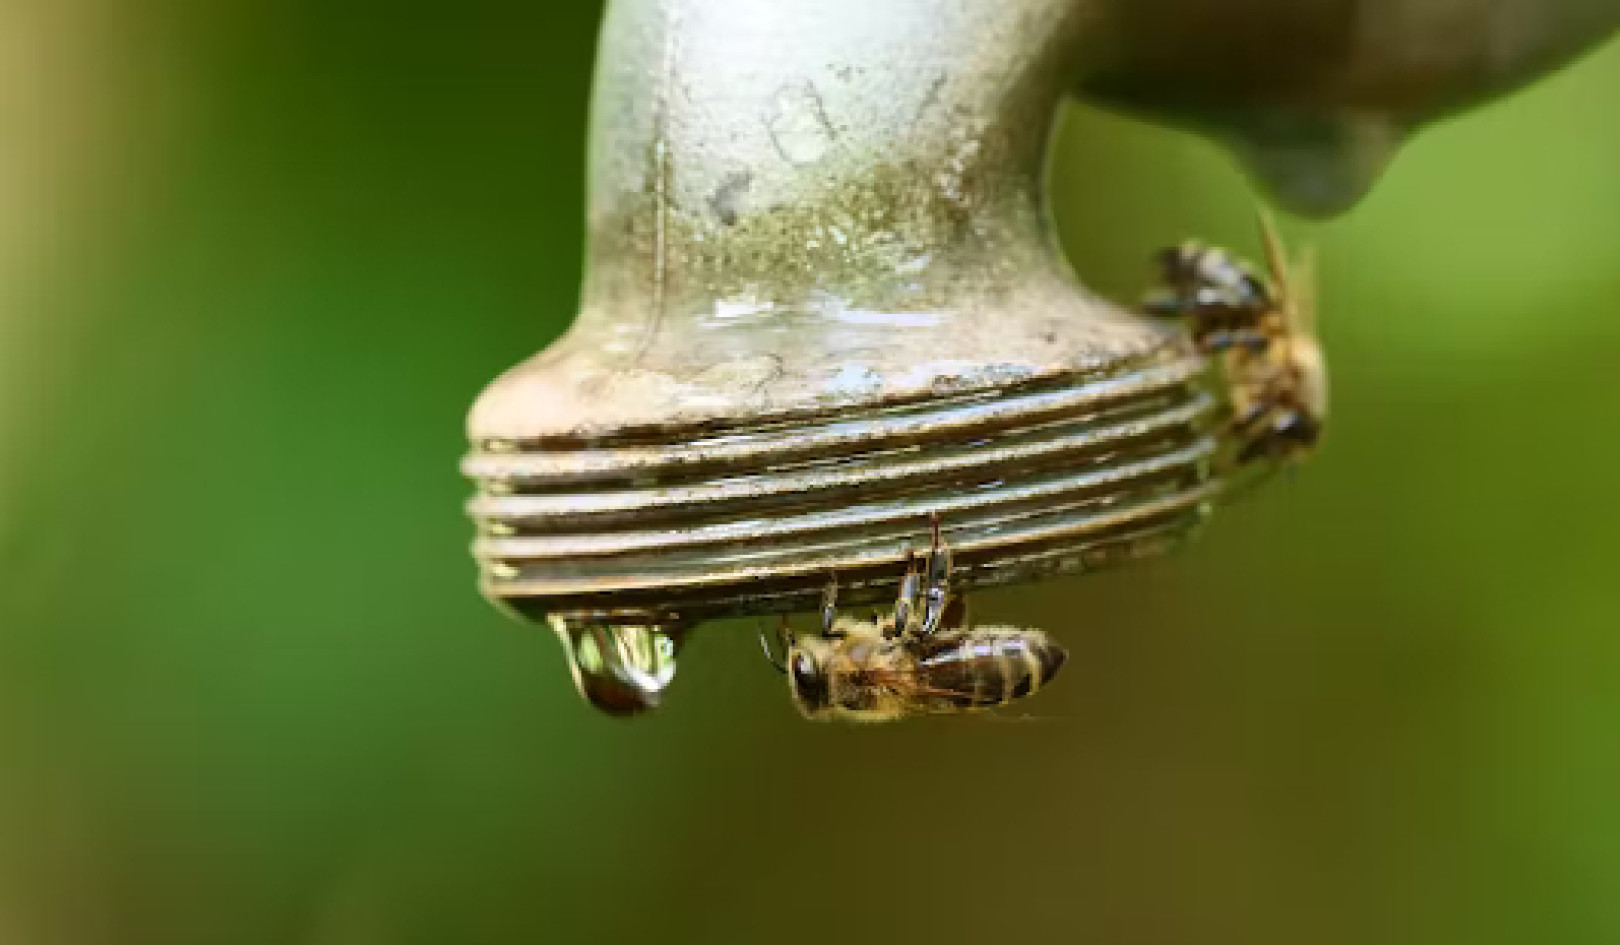 Οι μέλισσες αντιμετωπίζουν πολλές προκλήσεις και η κλιματική αλλαγή ανεβάζει την πίεση